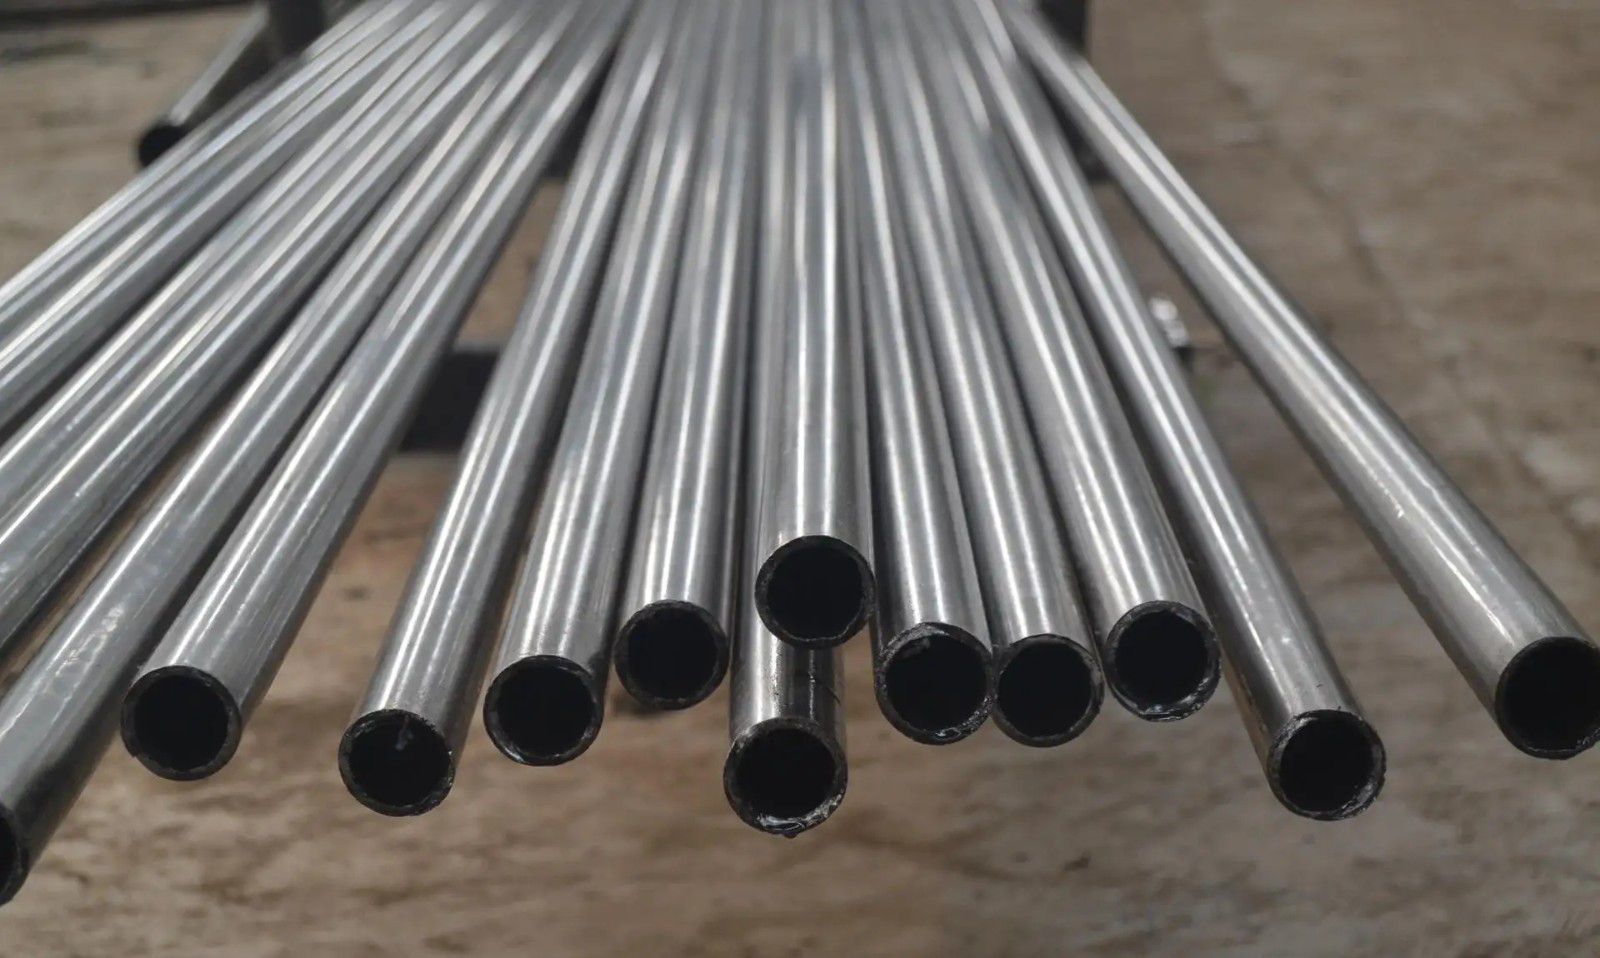 San Juan201 fabricantes de tubos de acero inoxidableSepa de un vistazo